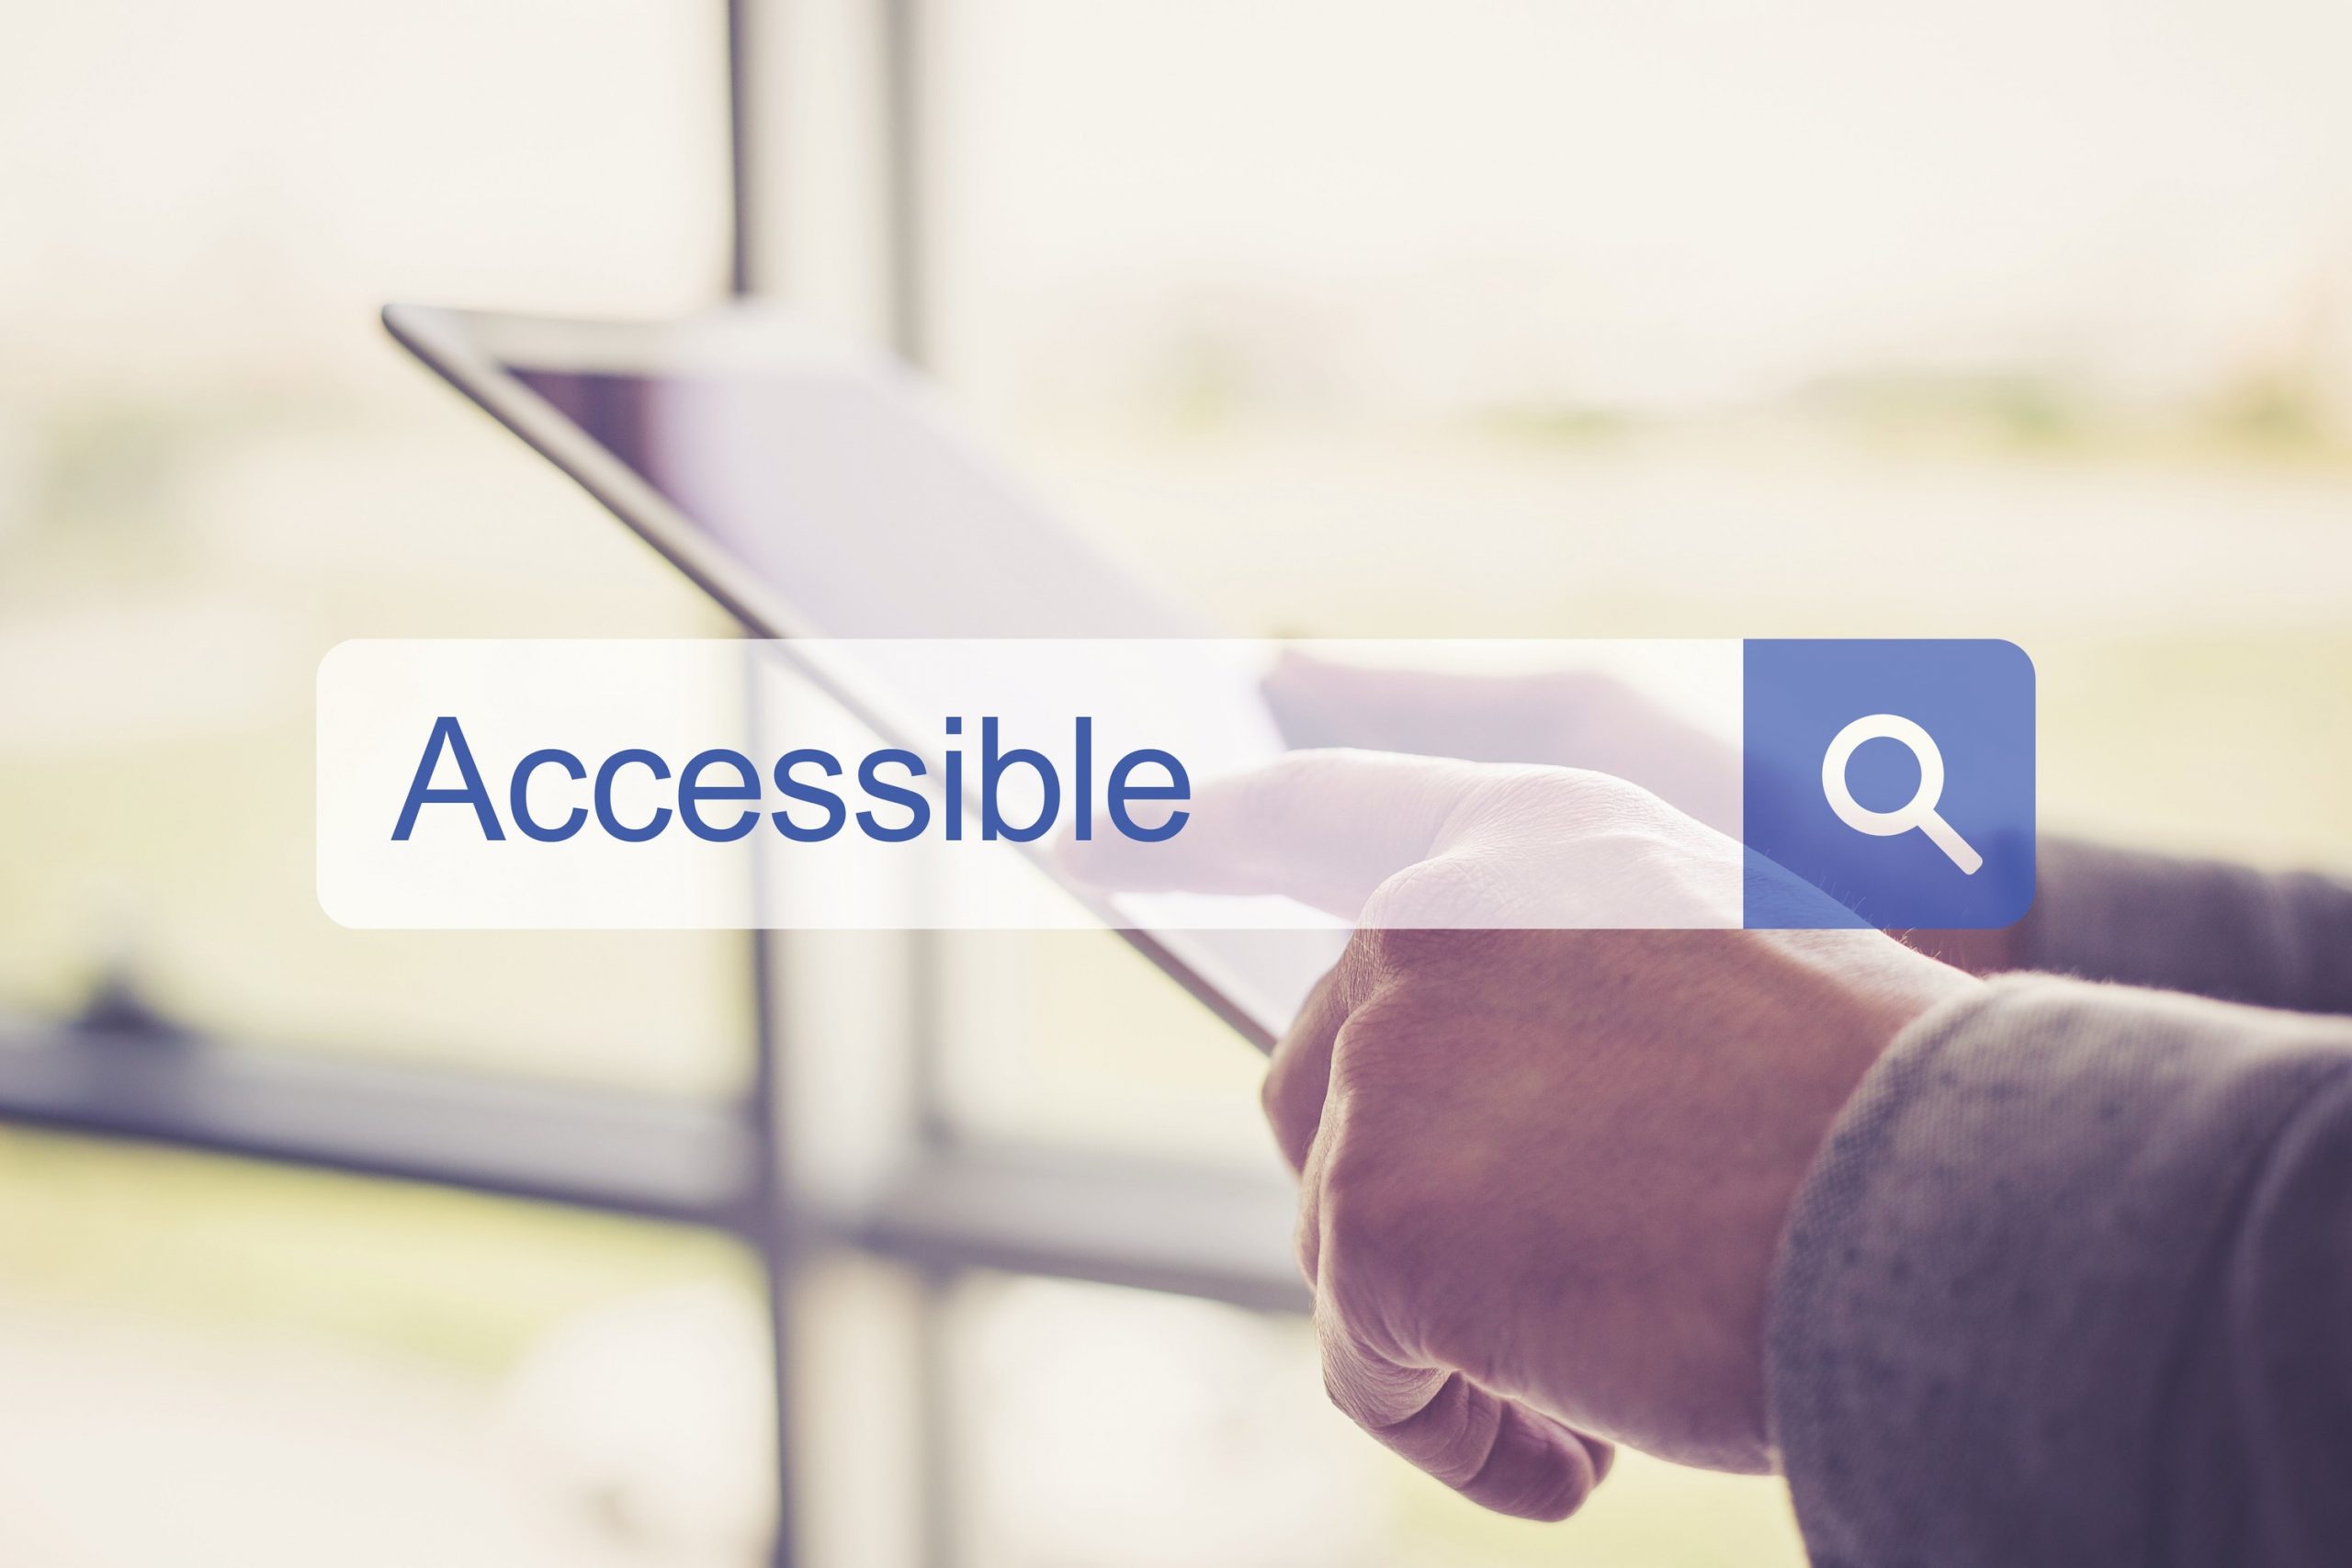 Casella di ricerca con la parola "accessible" in inglese, sullo sfondo vediamo delle mani che interagiscono con un tablet elettronico.